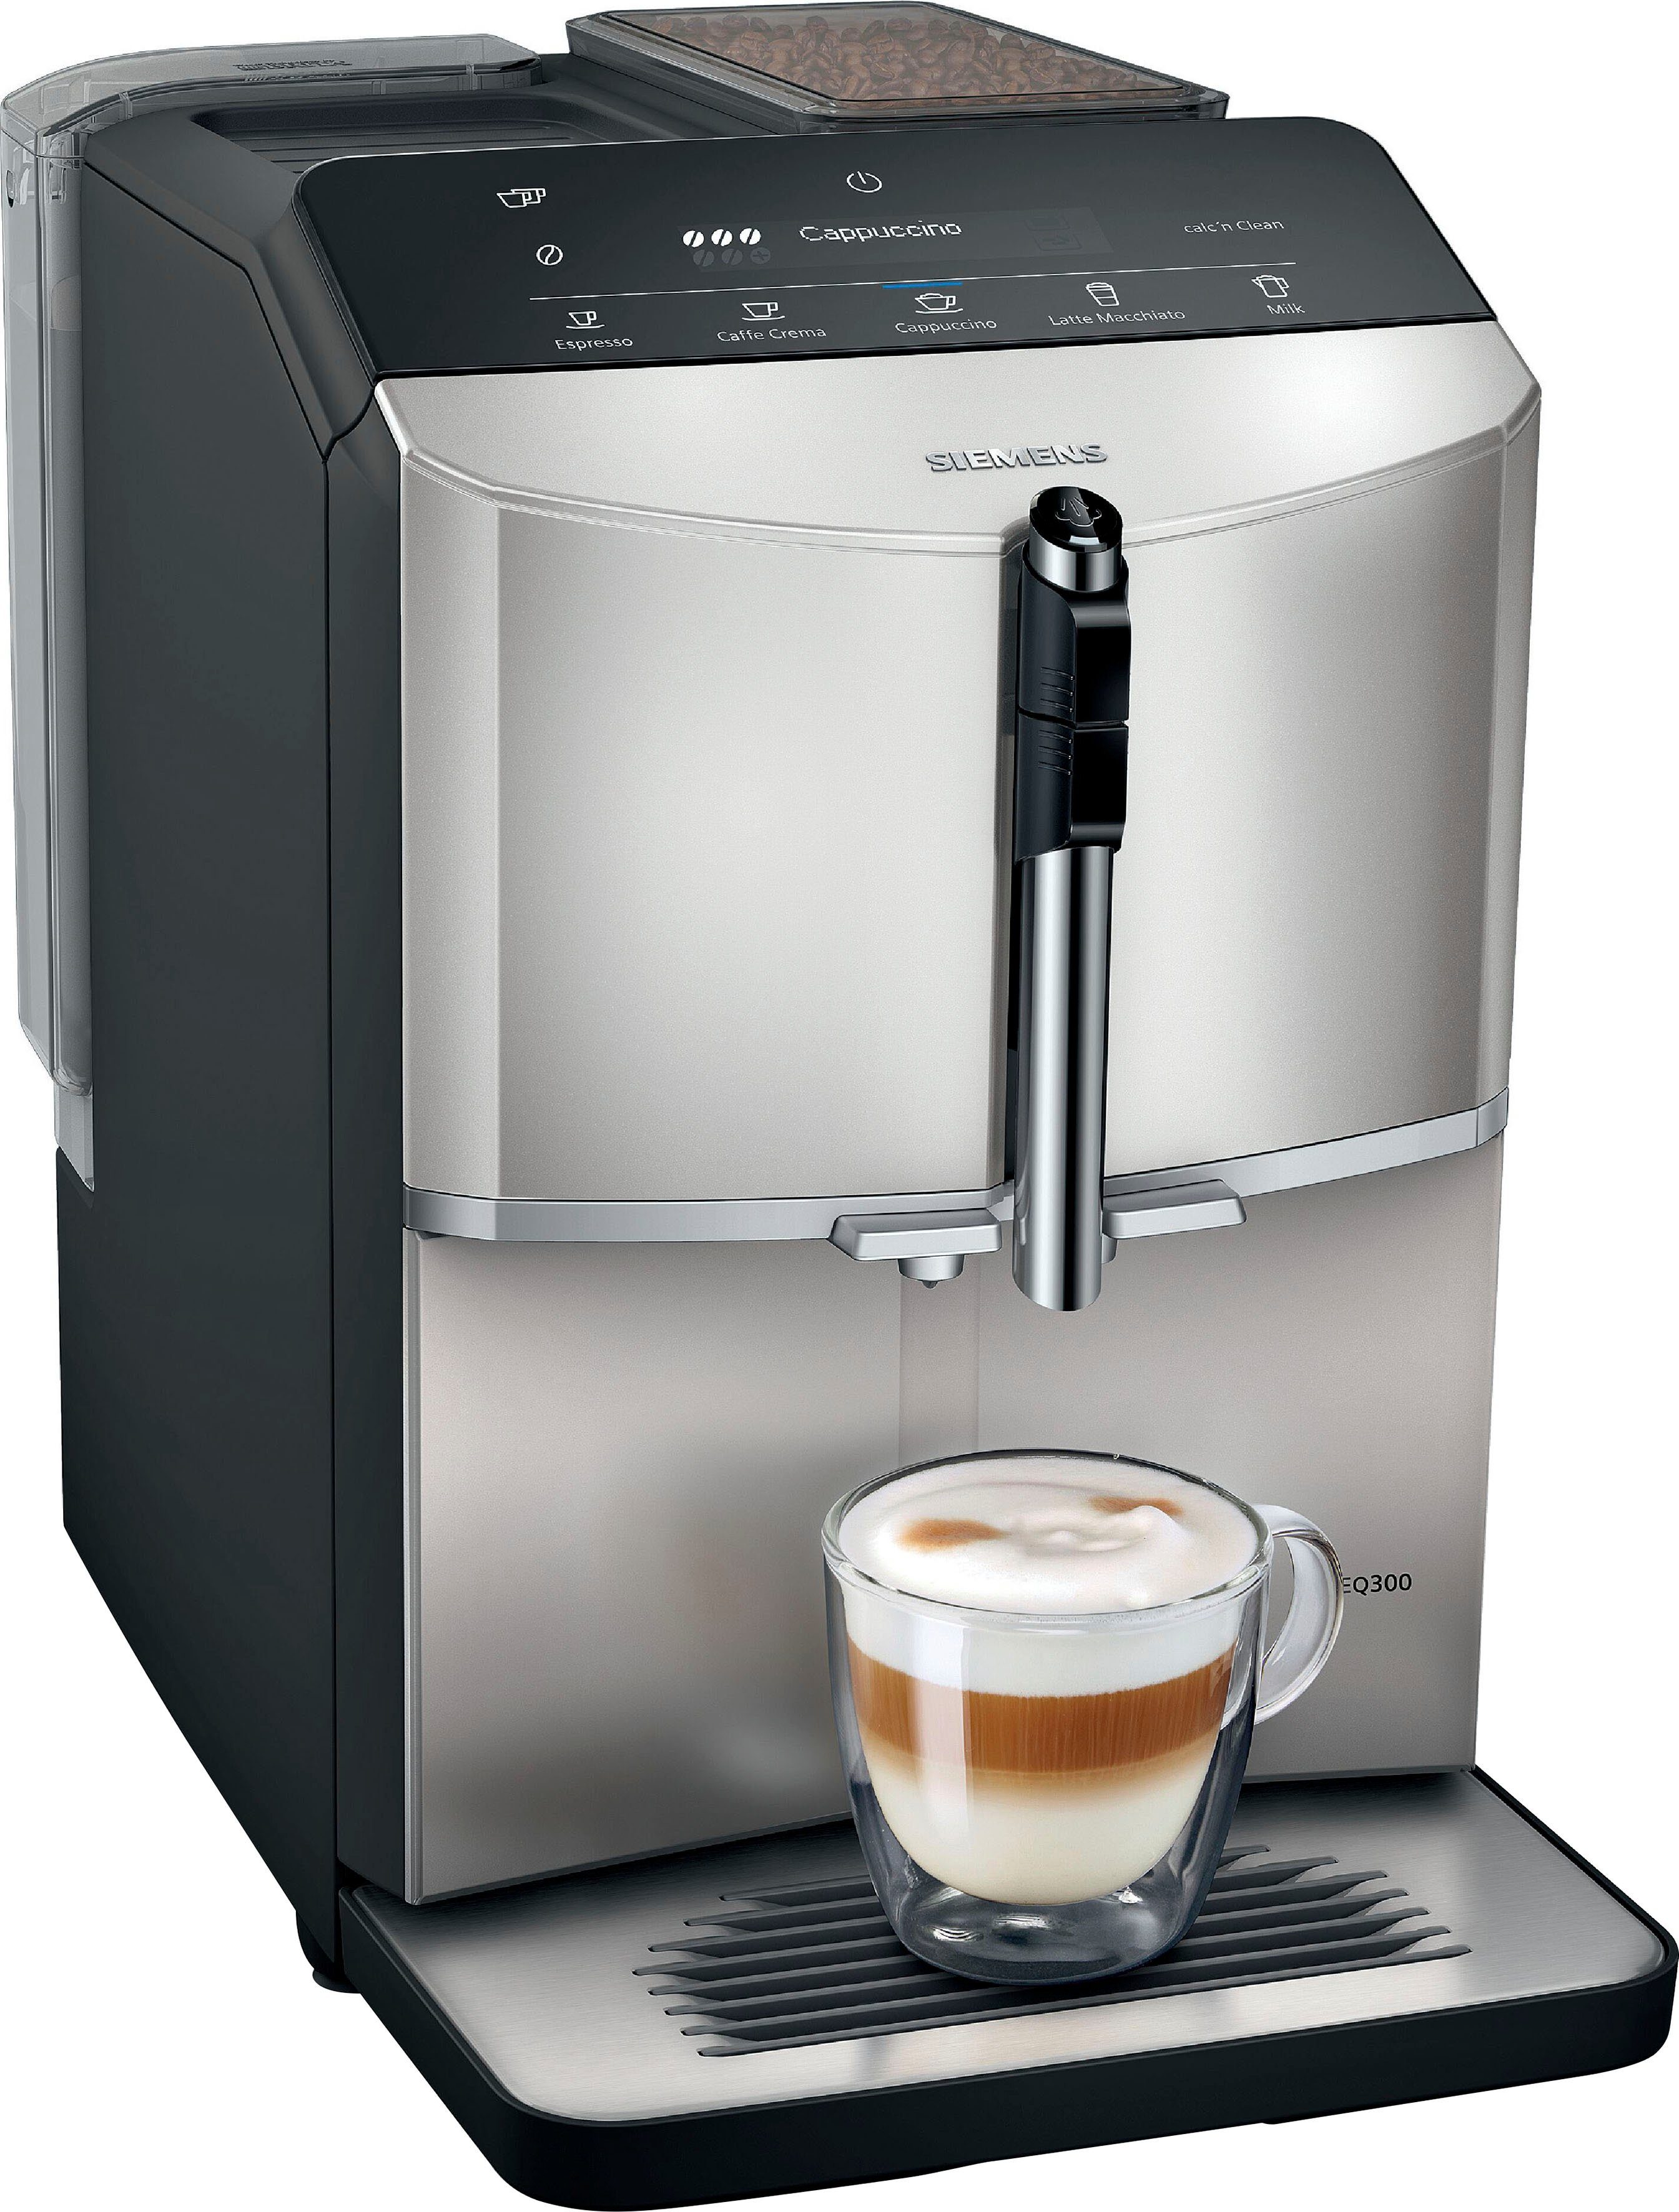 SIEMENS Kaffeevollautomat Inox TF303E07, metallic silver